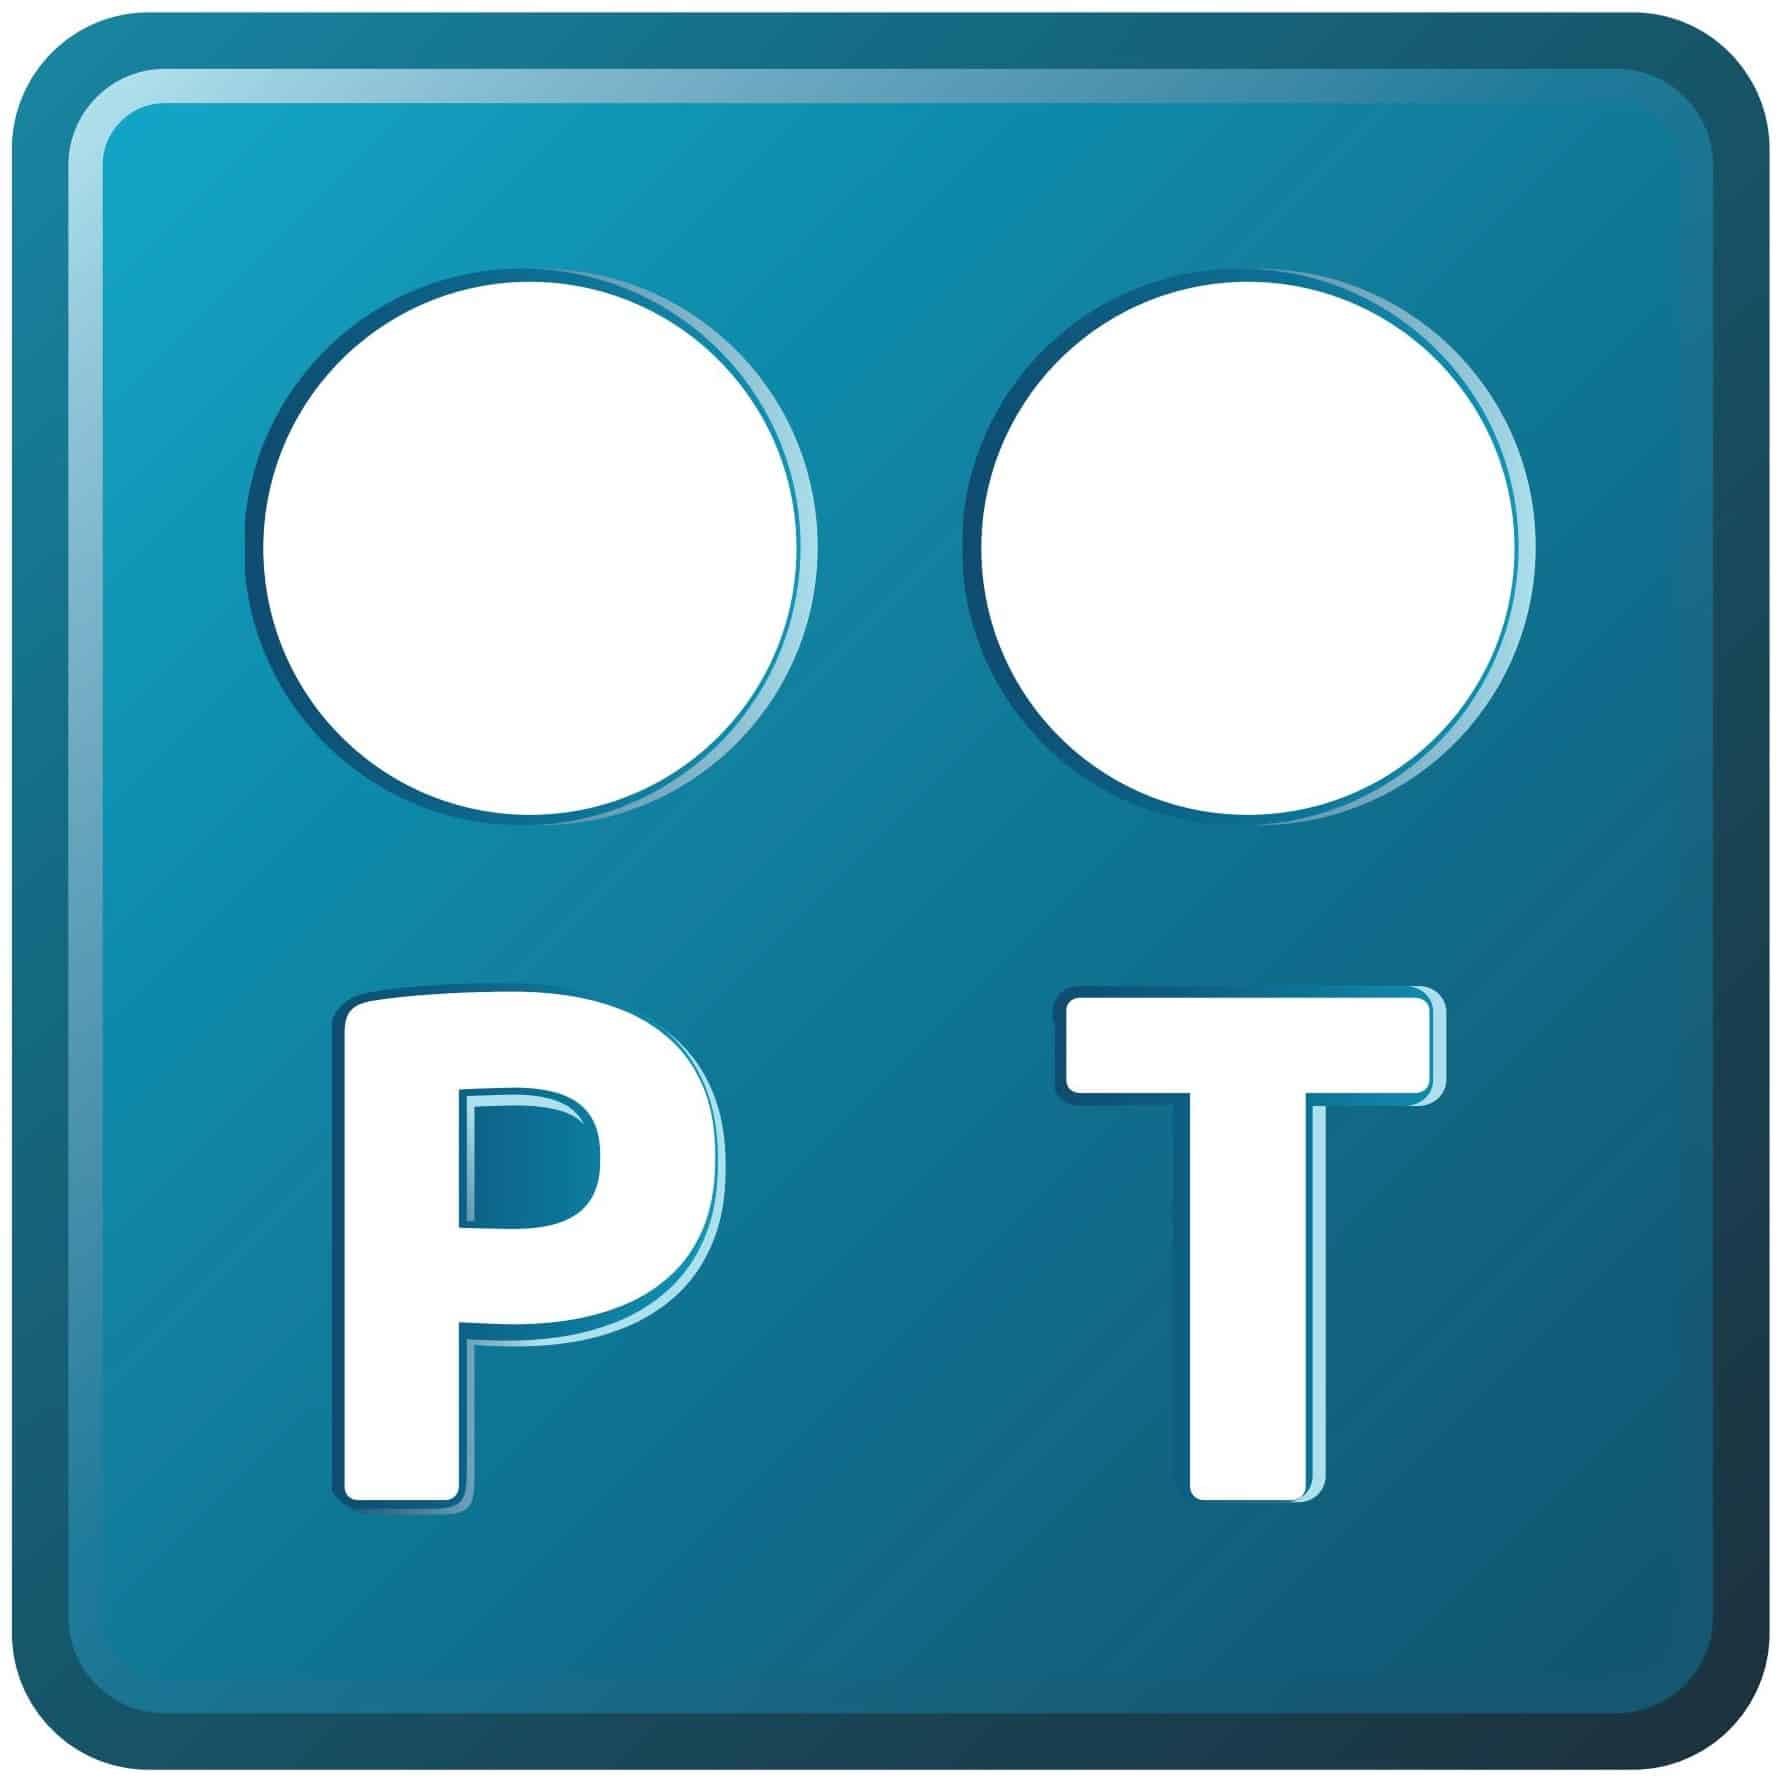 pt portugal telecom logo